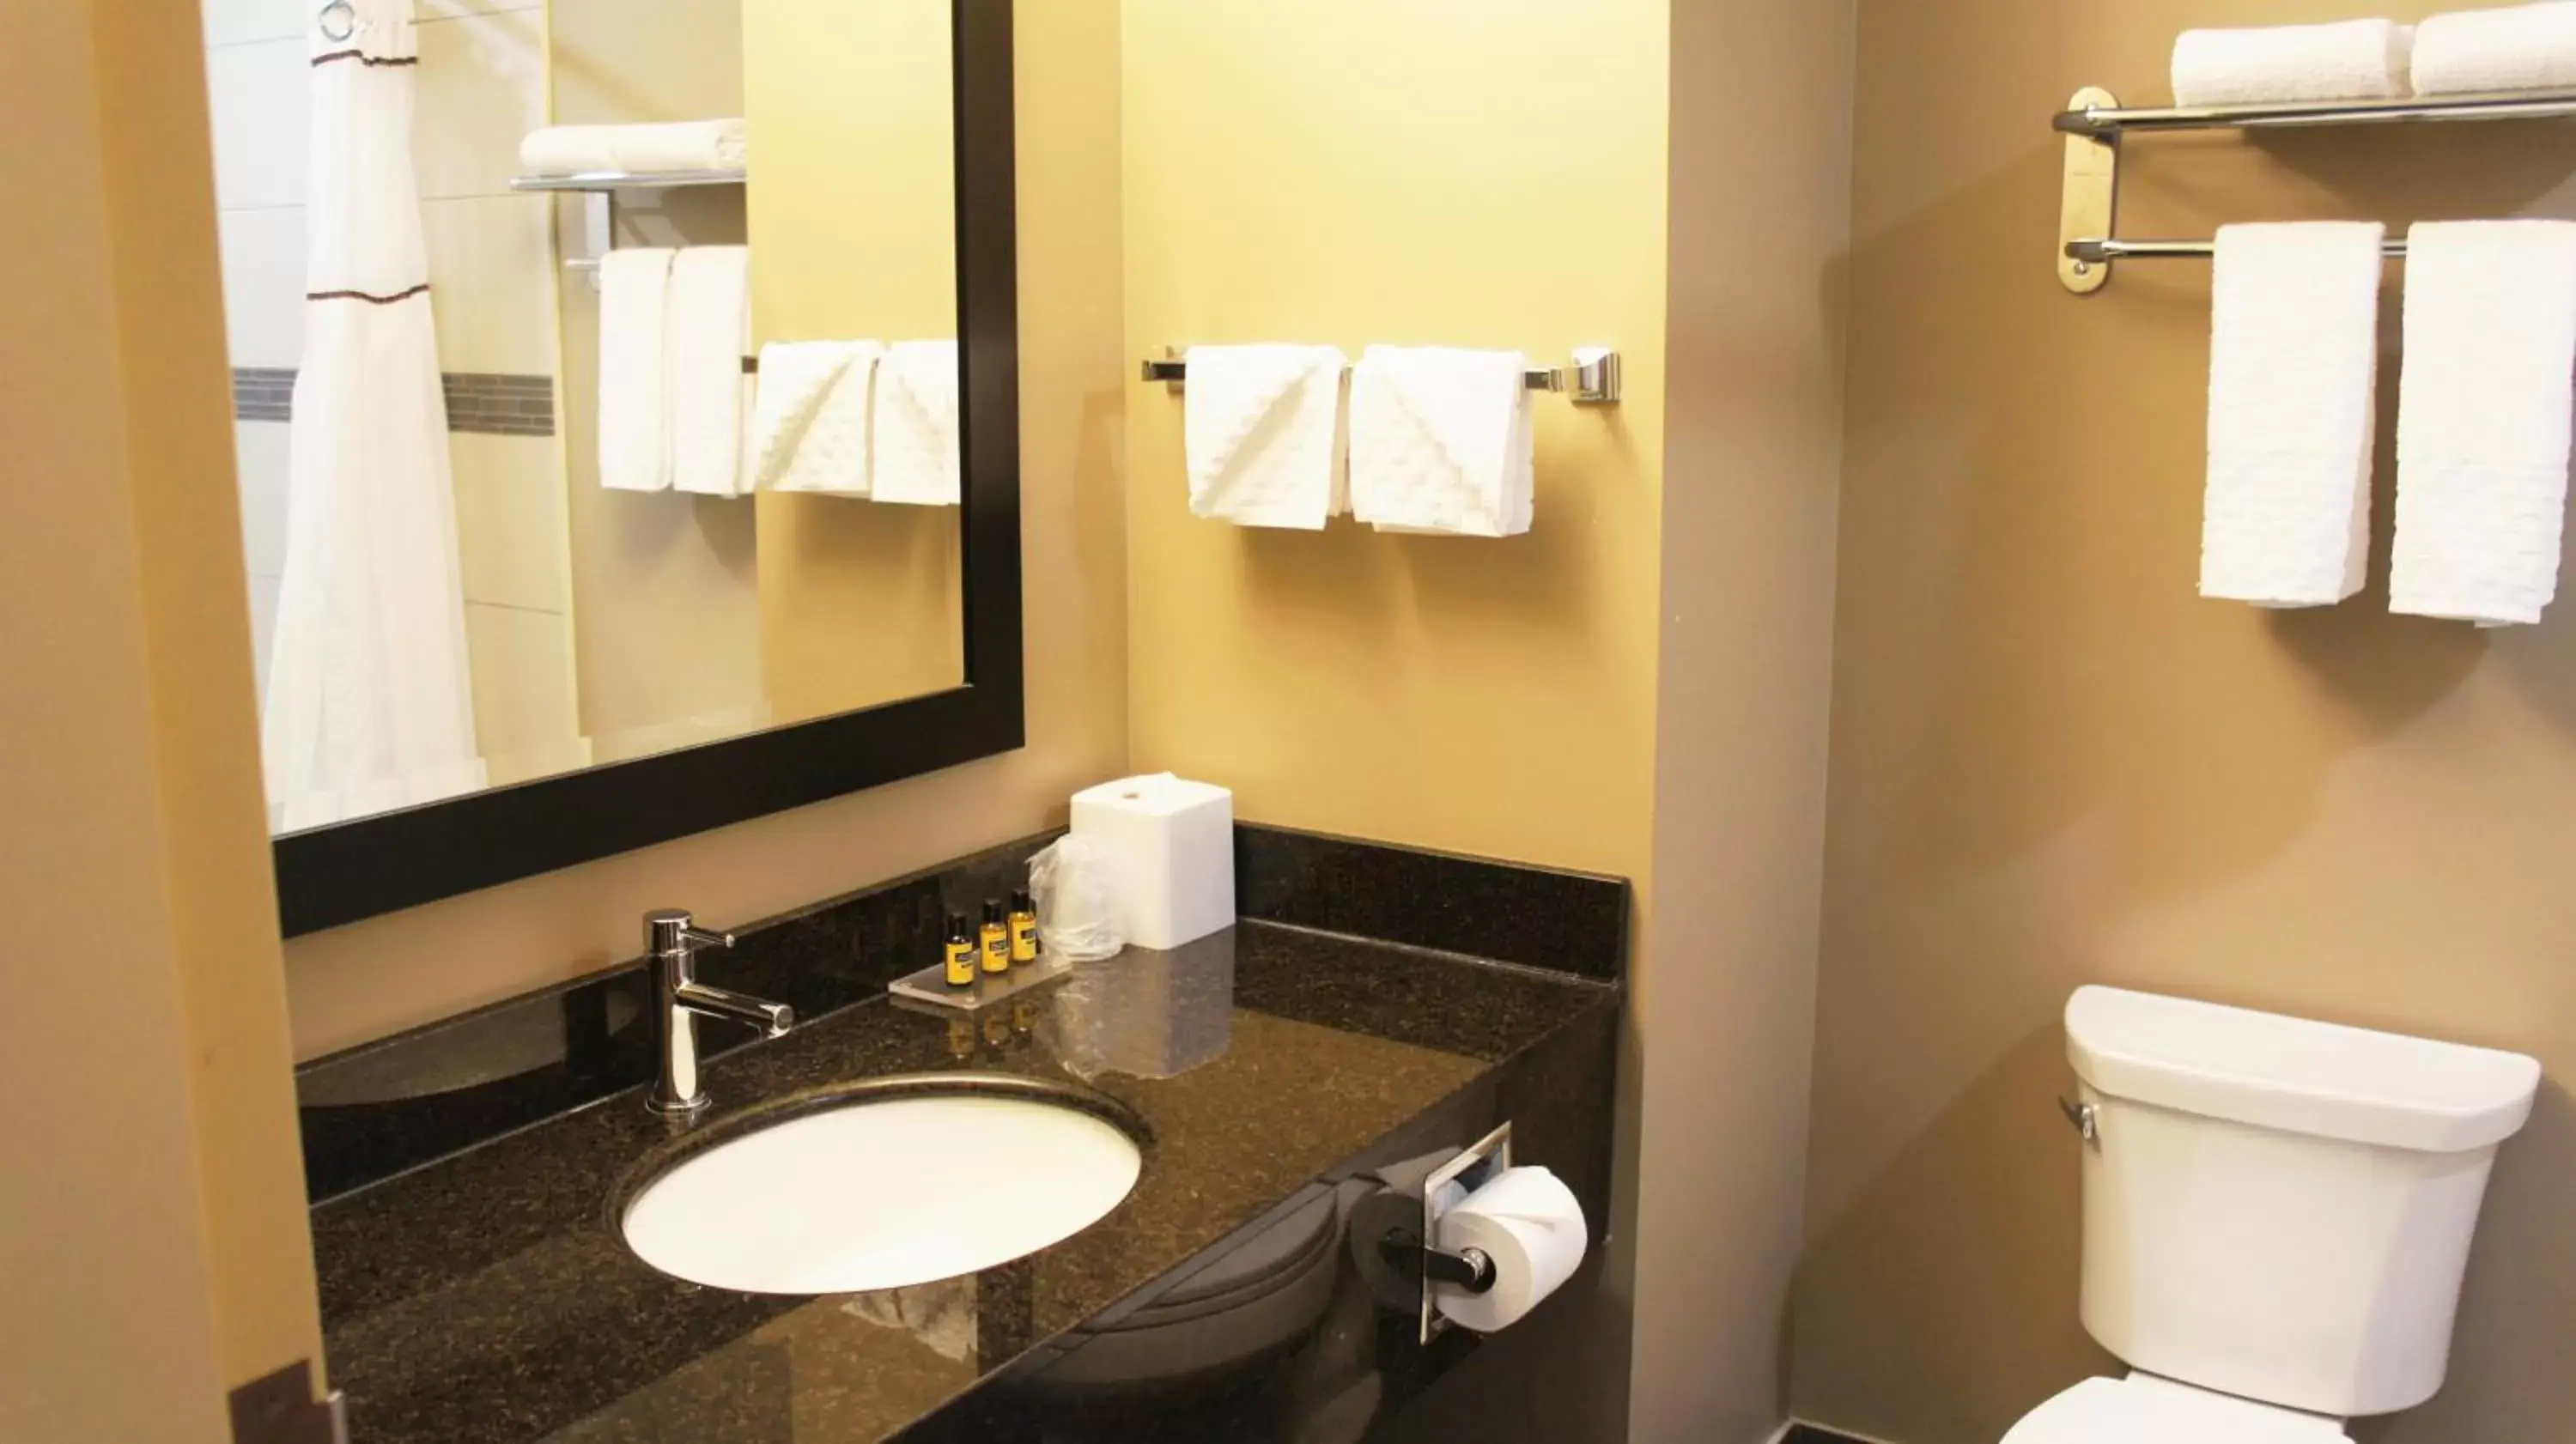 Property building, Bathroom in Best Western PLUS Fort Saskatchewan Inn & Suites